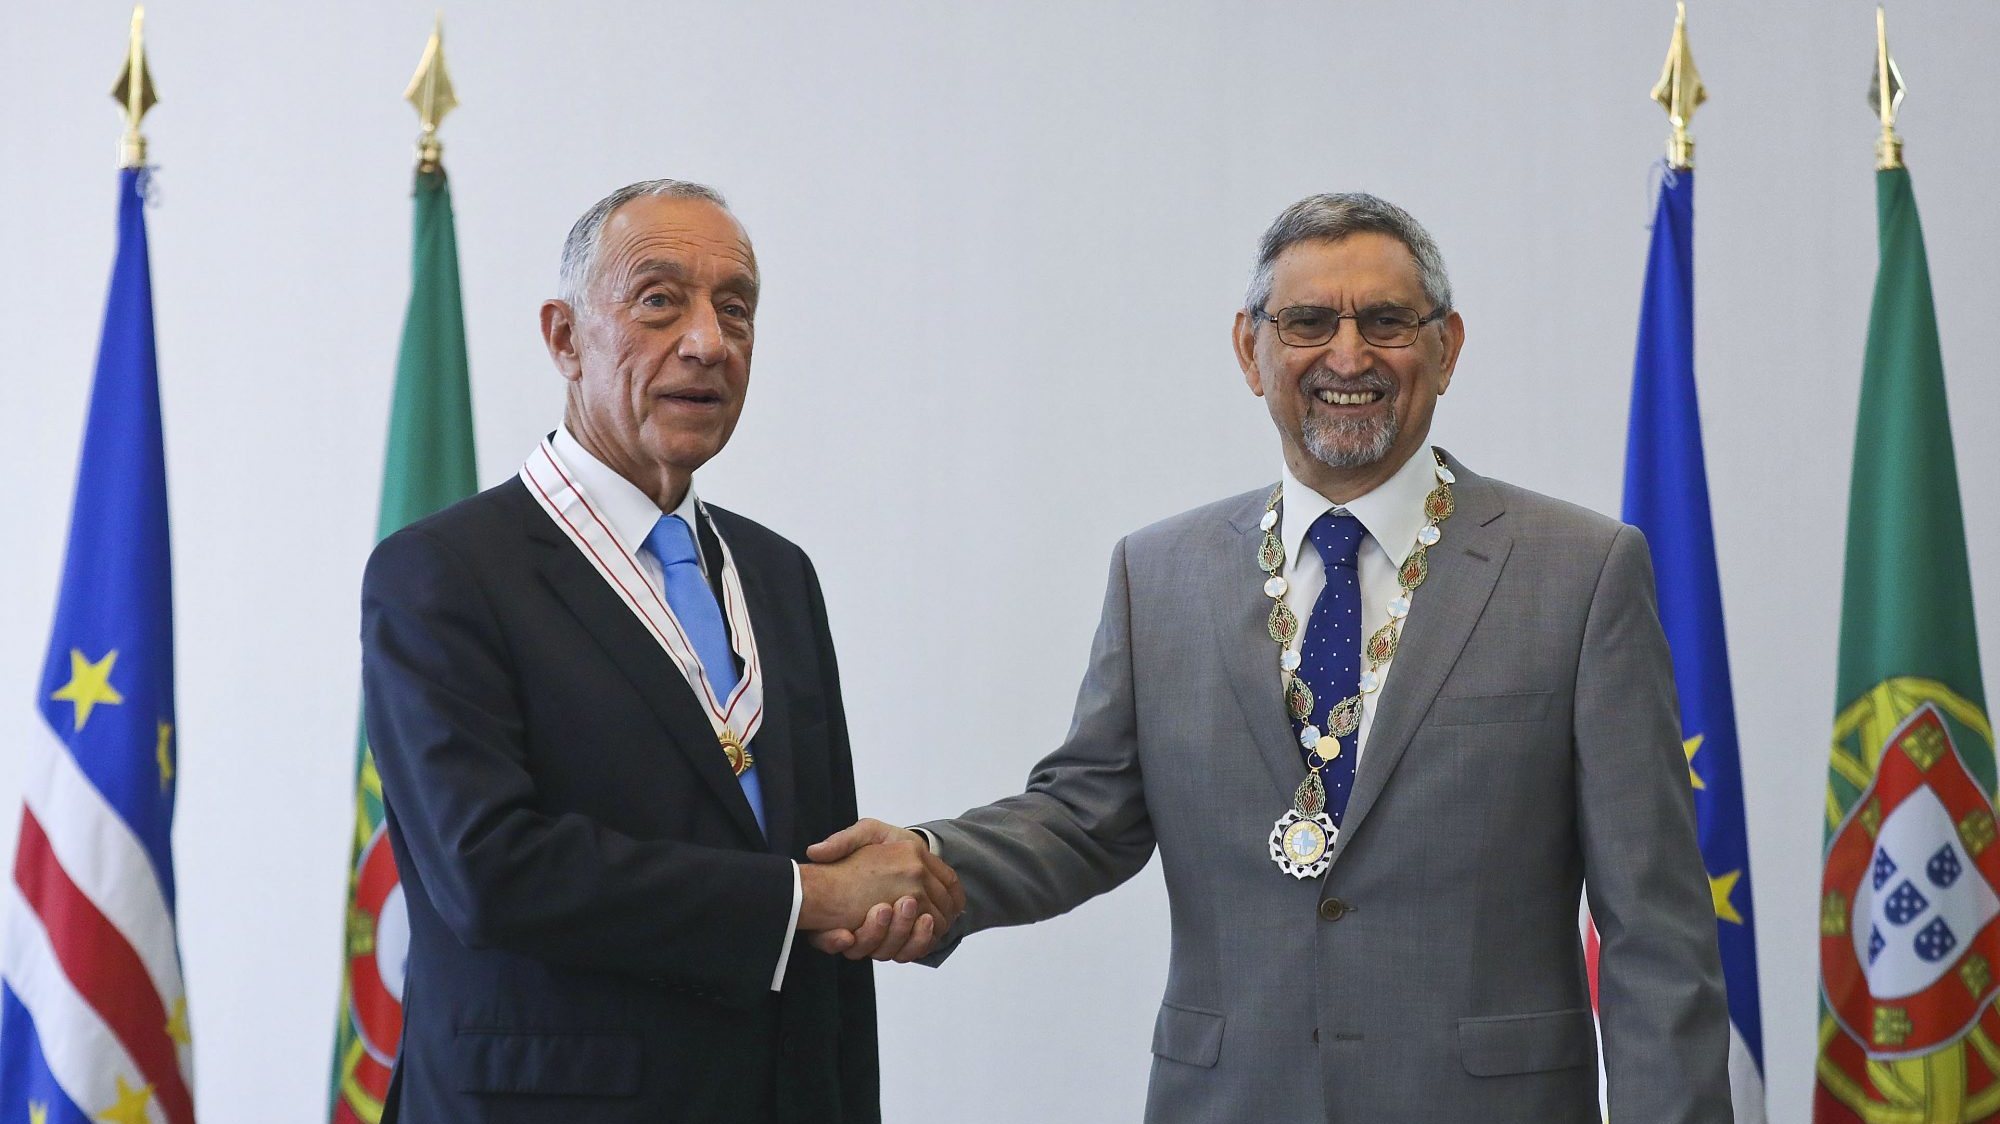 Jurista, professor universitário e escritor, Jorge Carlos Fonseca cumpre o segundo e último mandato como Presidente da República de Cabo Verde